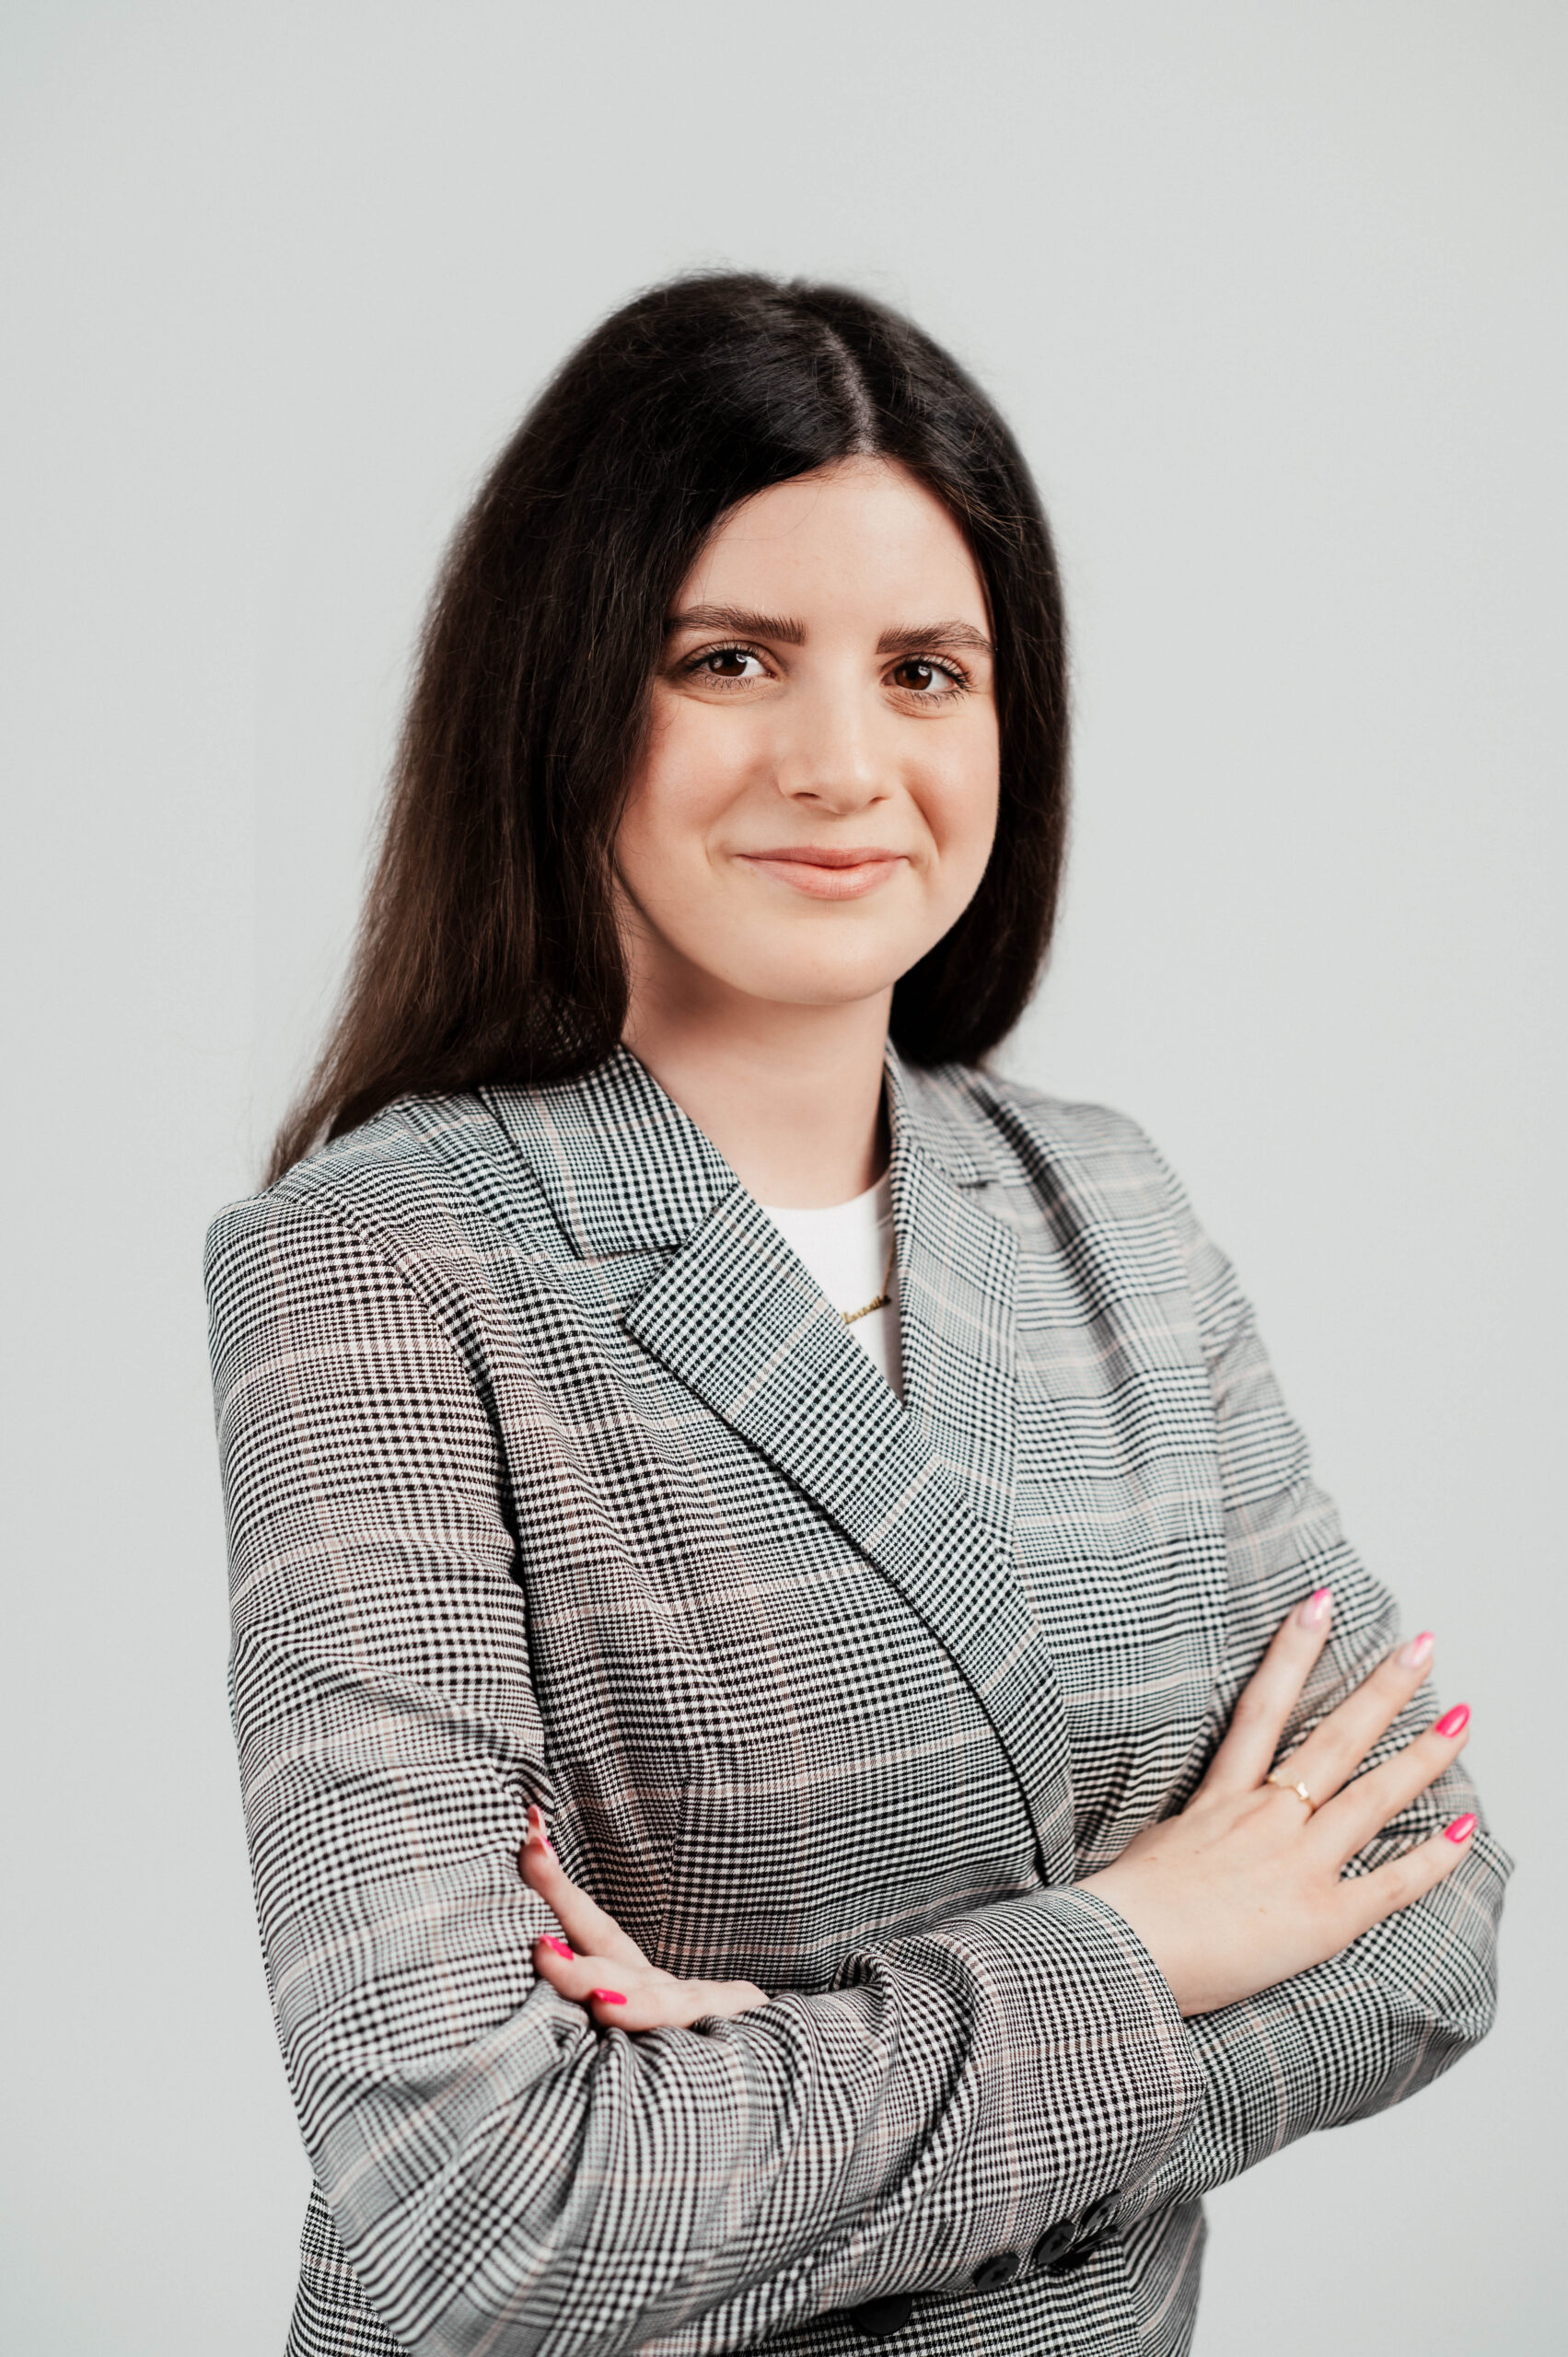 Weronika Smentek